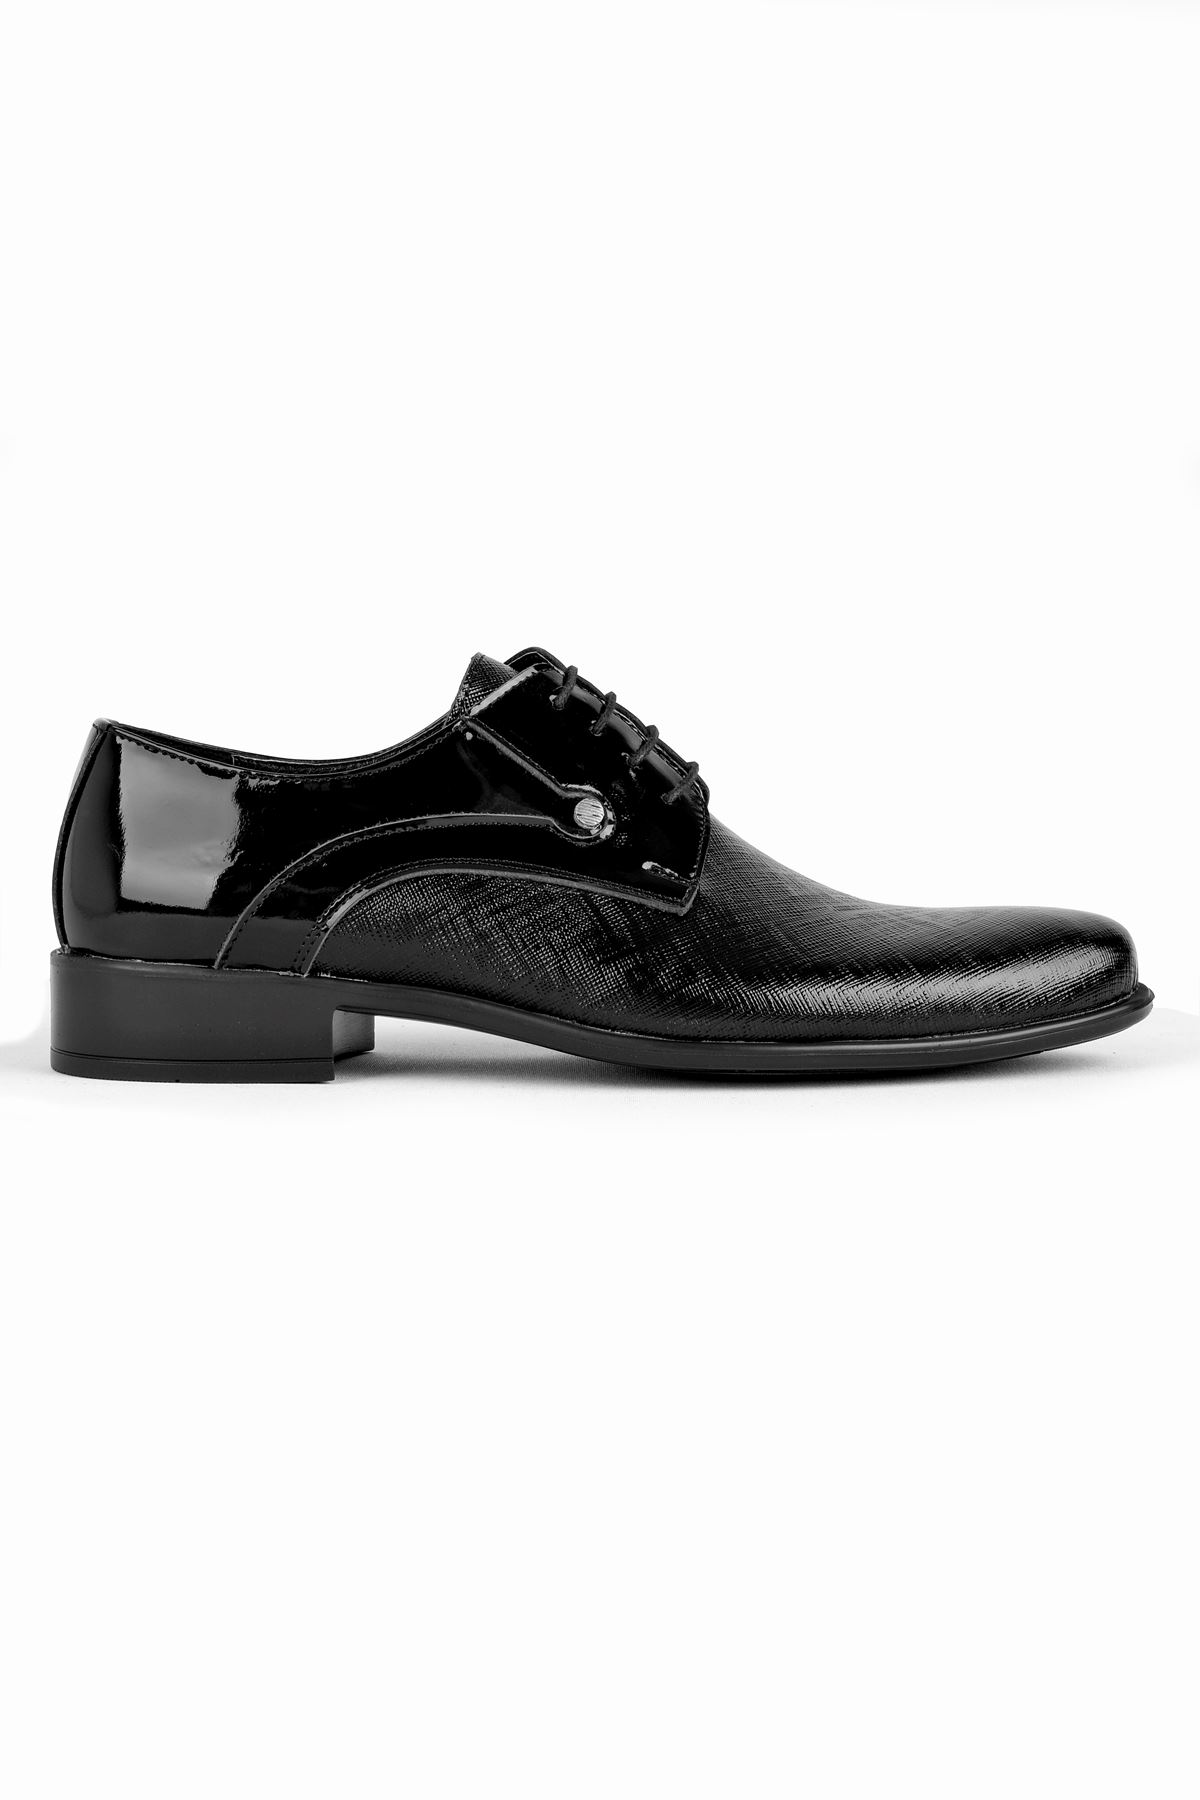 Lonut Erkek Hakiki Deri  Rugan Damat Ayakkabı-siyah